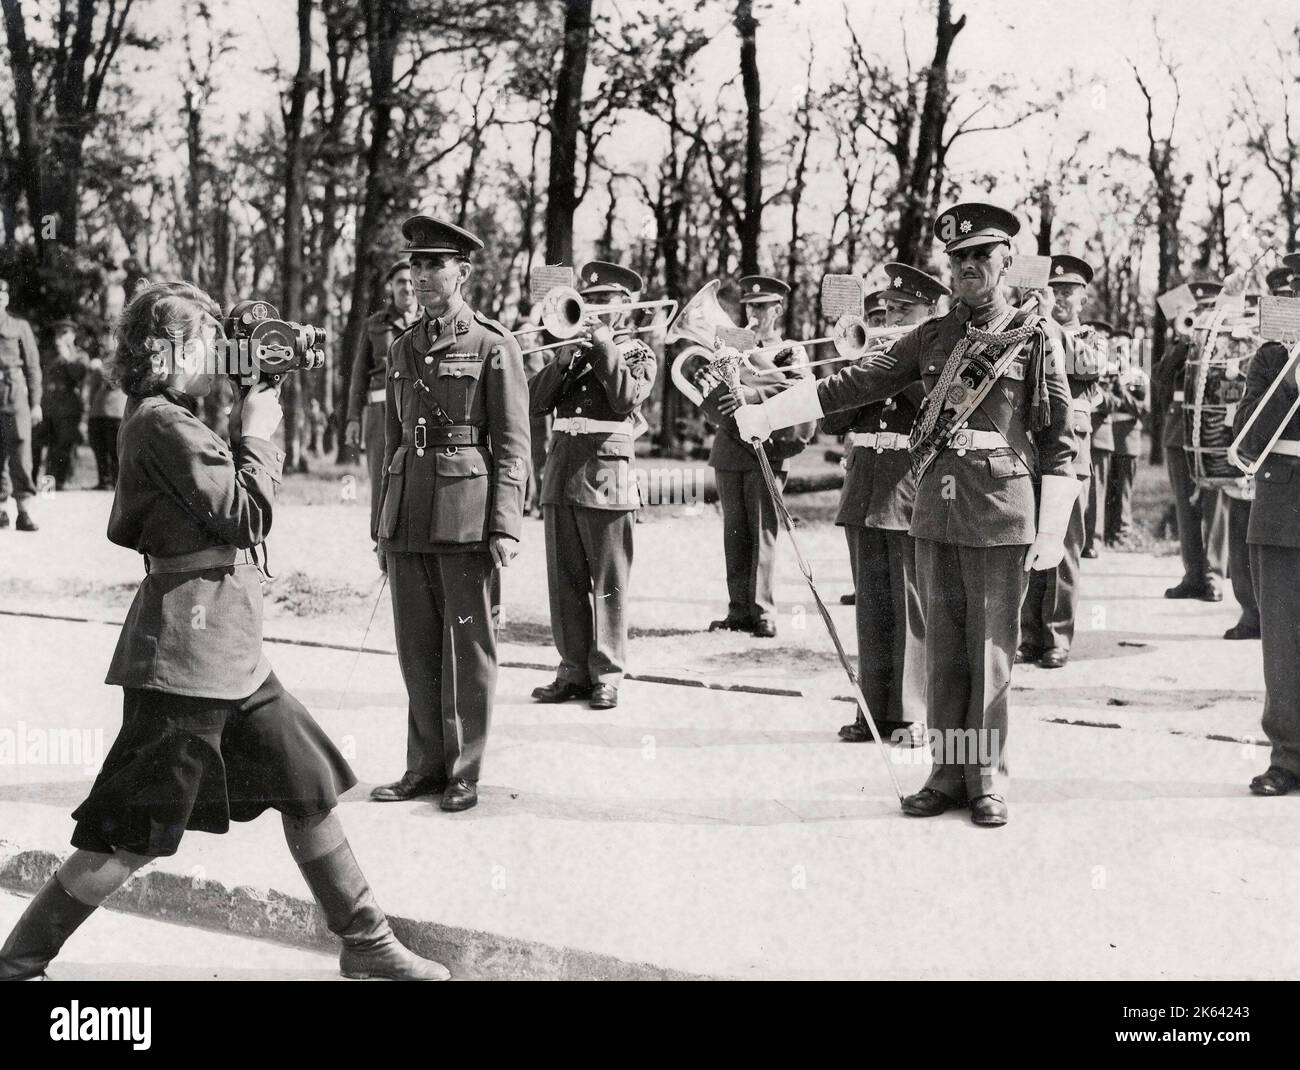 Fotografía Vintage Segunda Guerra Mundial - Fotografia del Ejército Rojo Tomando fotos de la banda del regimiento Devonshire presentación de la Orden del Baño a Zhukov y Rokossovsky 1945. Foto de stock